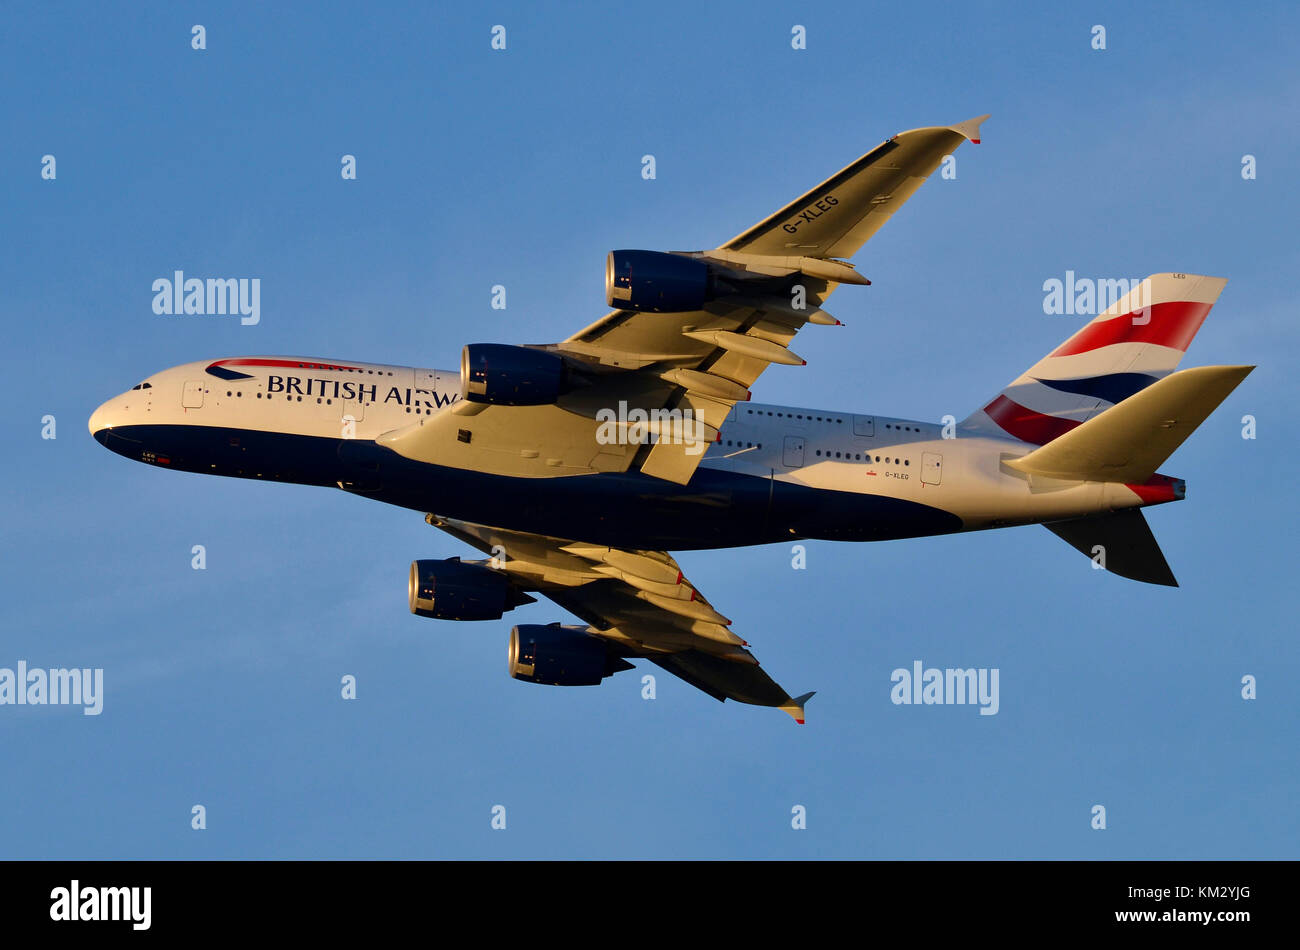 Airbus A380, British Airways, l'aéroport de Heathrow, Royaume-Uni. Airbus A380-841 G-XLEG est vu s'envoler après le décollage au coucher du soleil. Banque D'Images